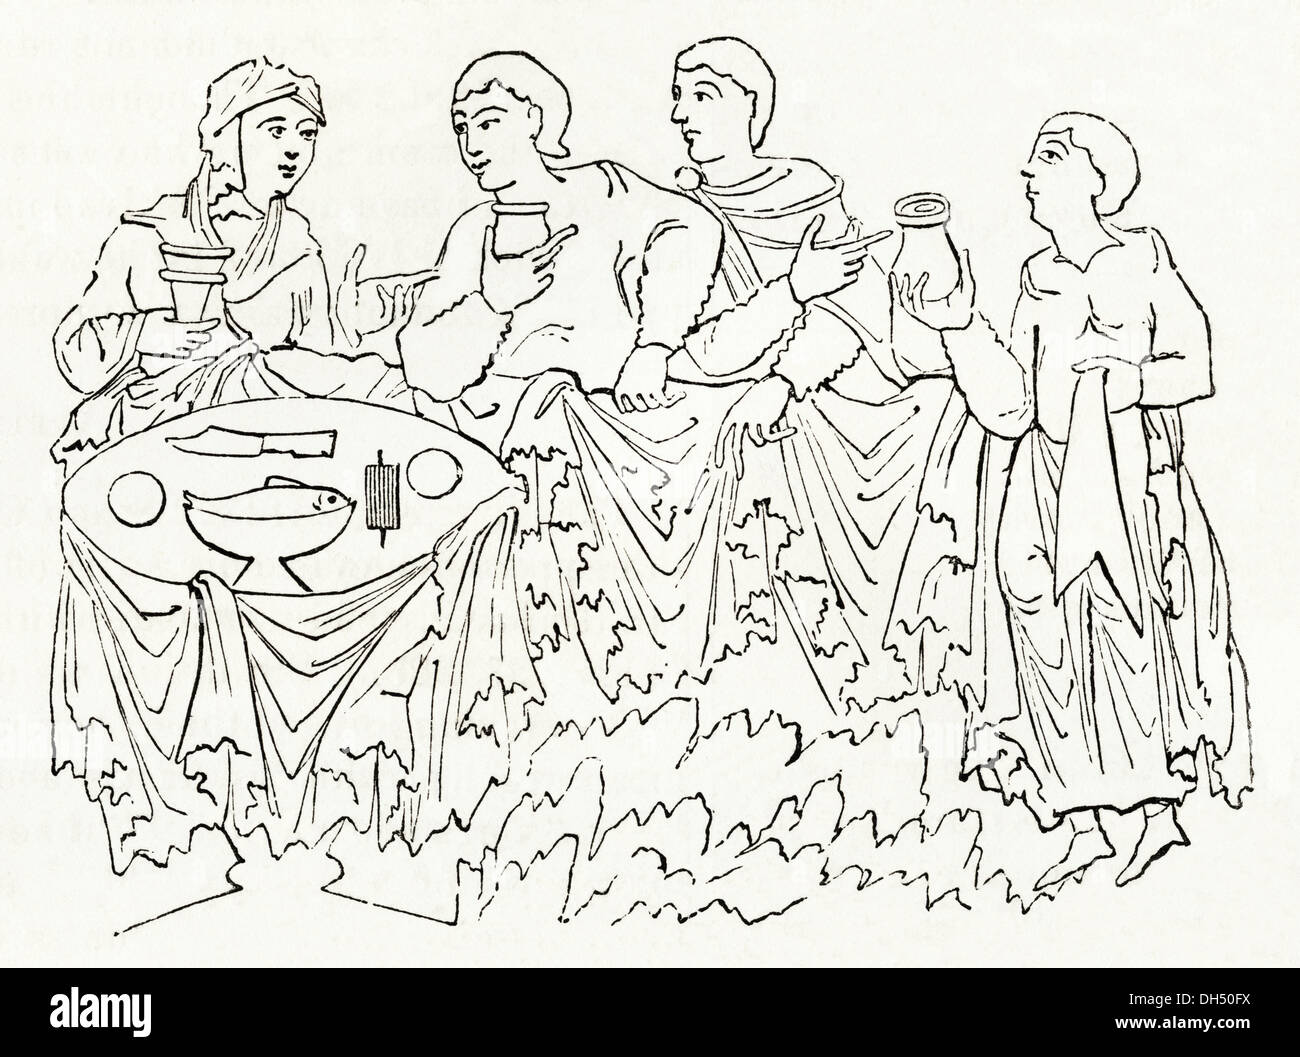 Gran Bretaña anglosajona. La vida cotidiana los hombres bebiendo cerveza en la cena en Gran Bretaña anglosajona. Xilografía victoriano circa 1845. Foto de stock